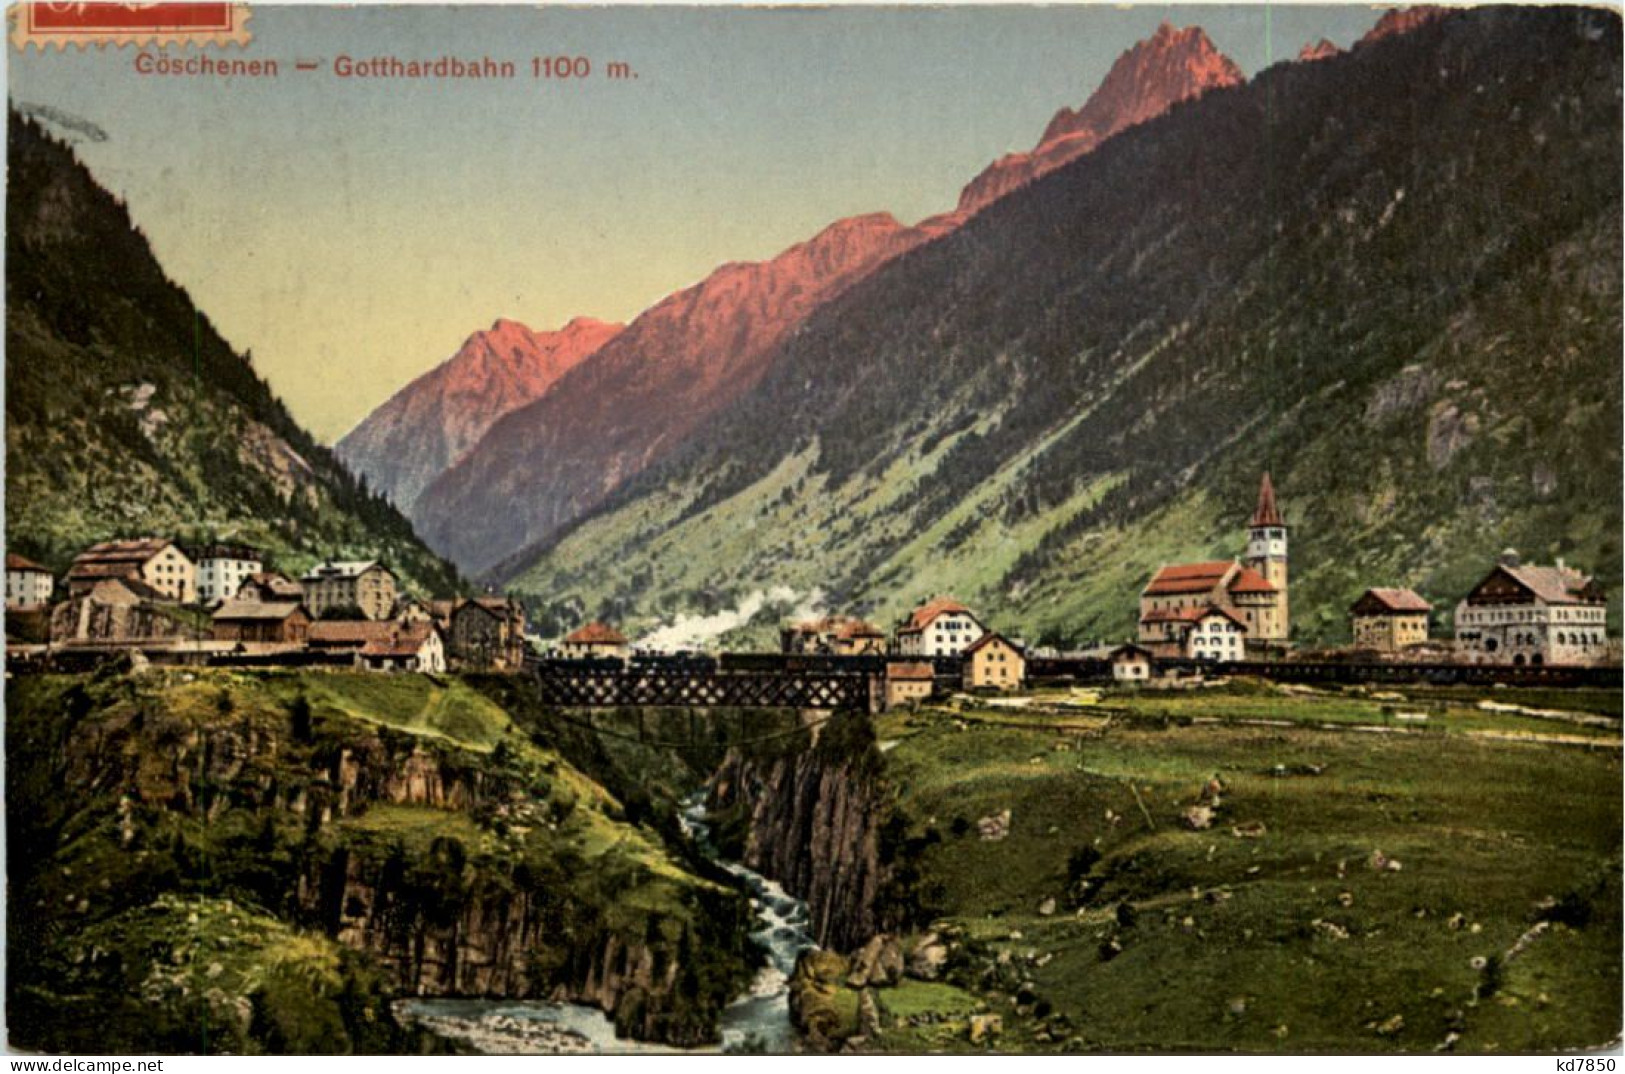 Göschenen - Gotthardbahn - Göschenen